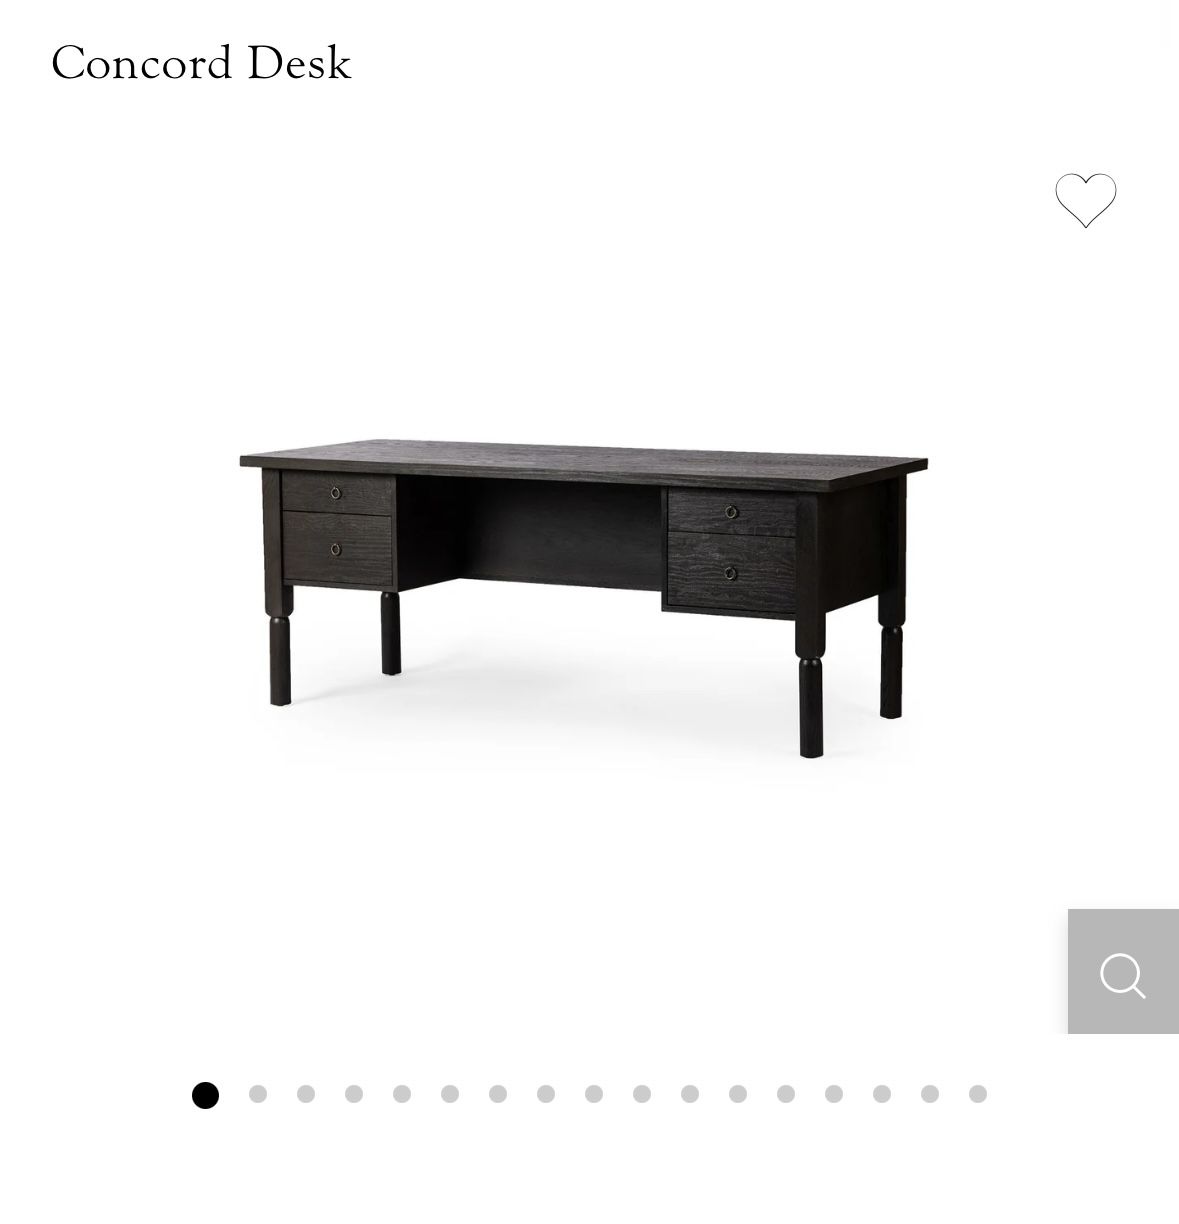 SALE. Brand New Concord Desk 